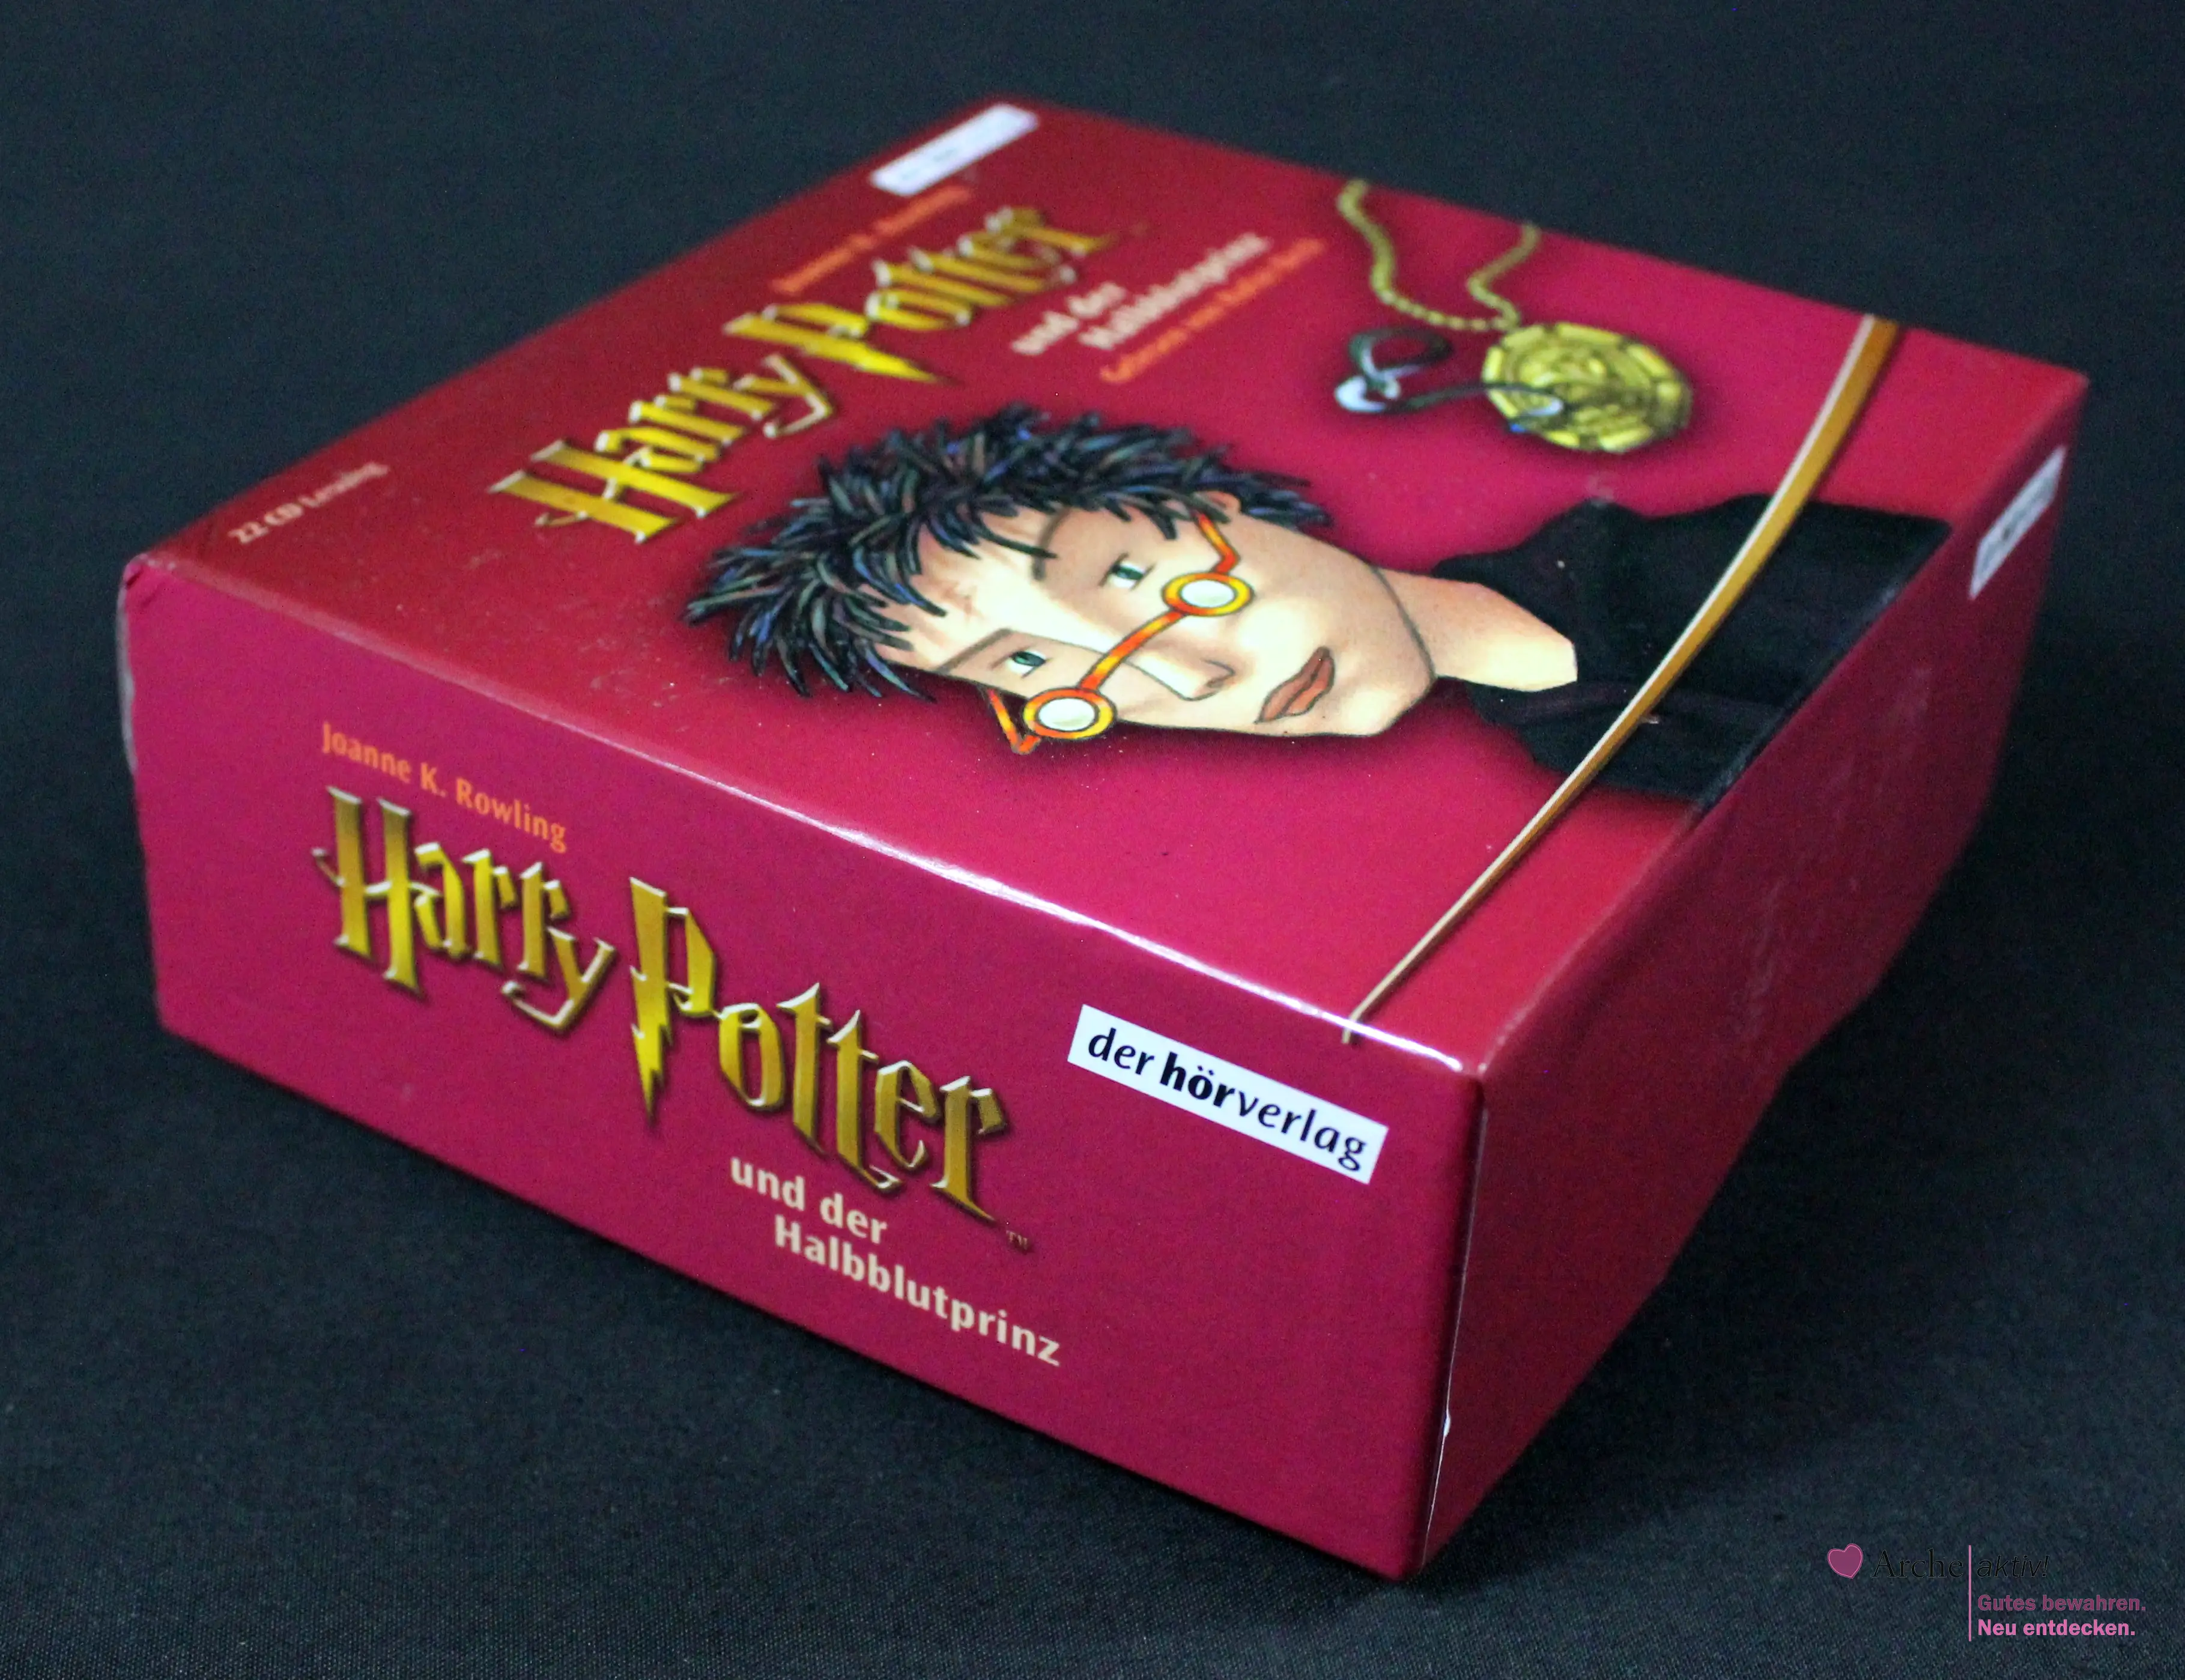 Harry Potter und der Halbblutprinz - Hörbuch, 22 CD Lesung, gebraucht